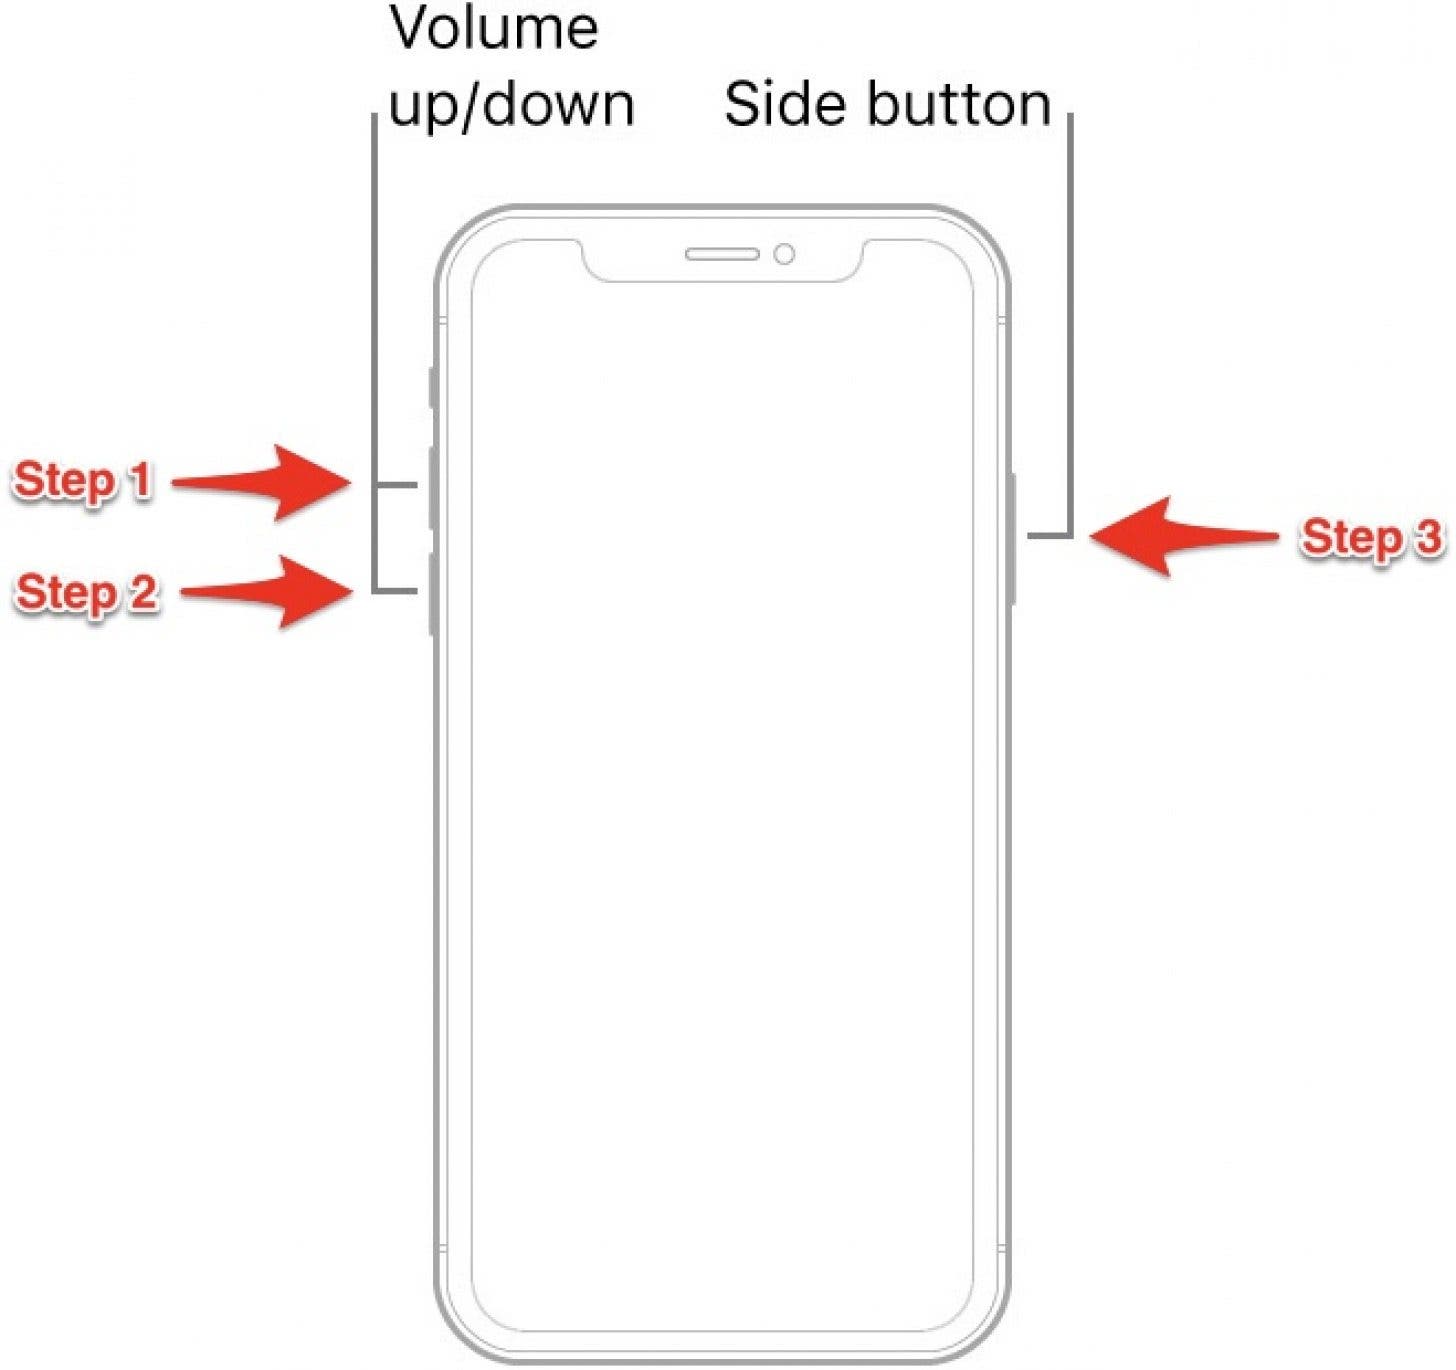 Effectuez un redémarrage forcé pour redémarrer votre iPhone.